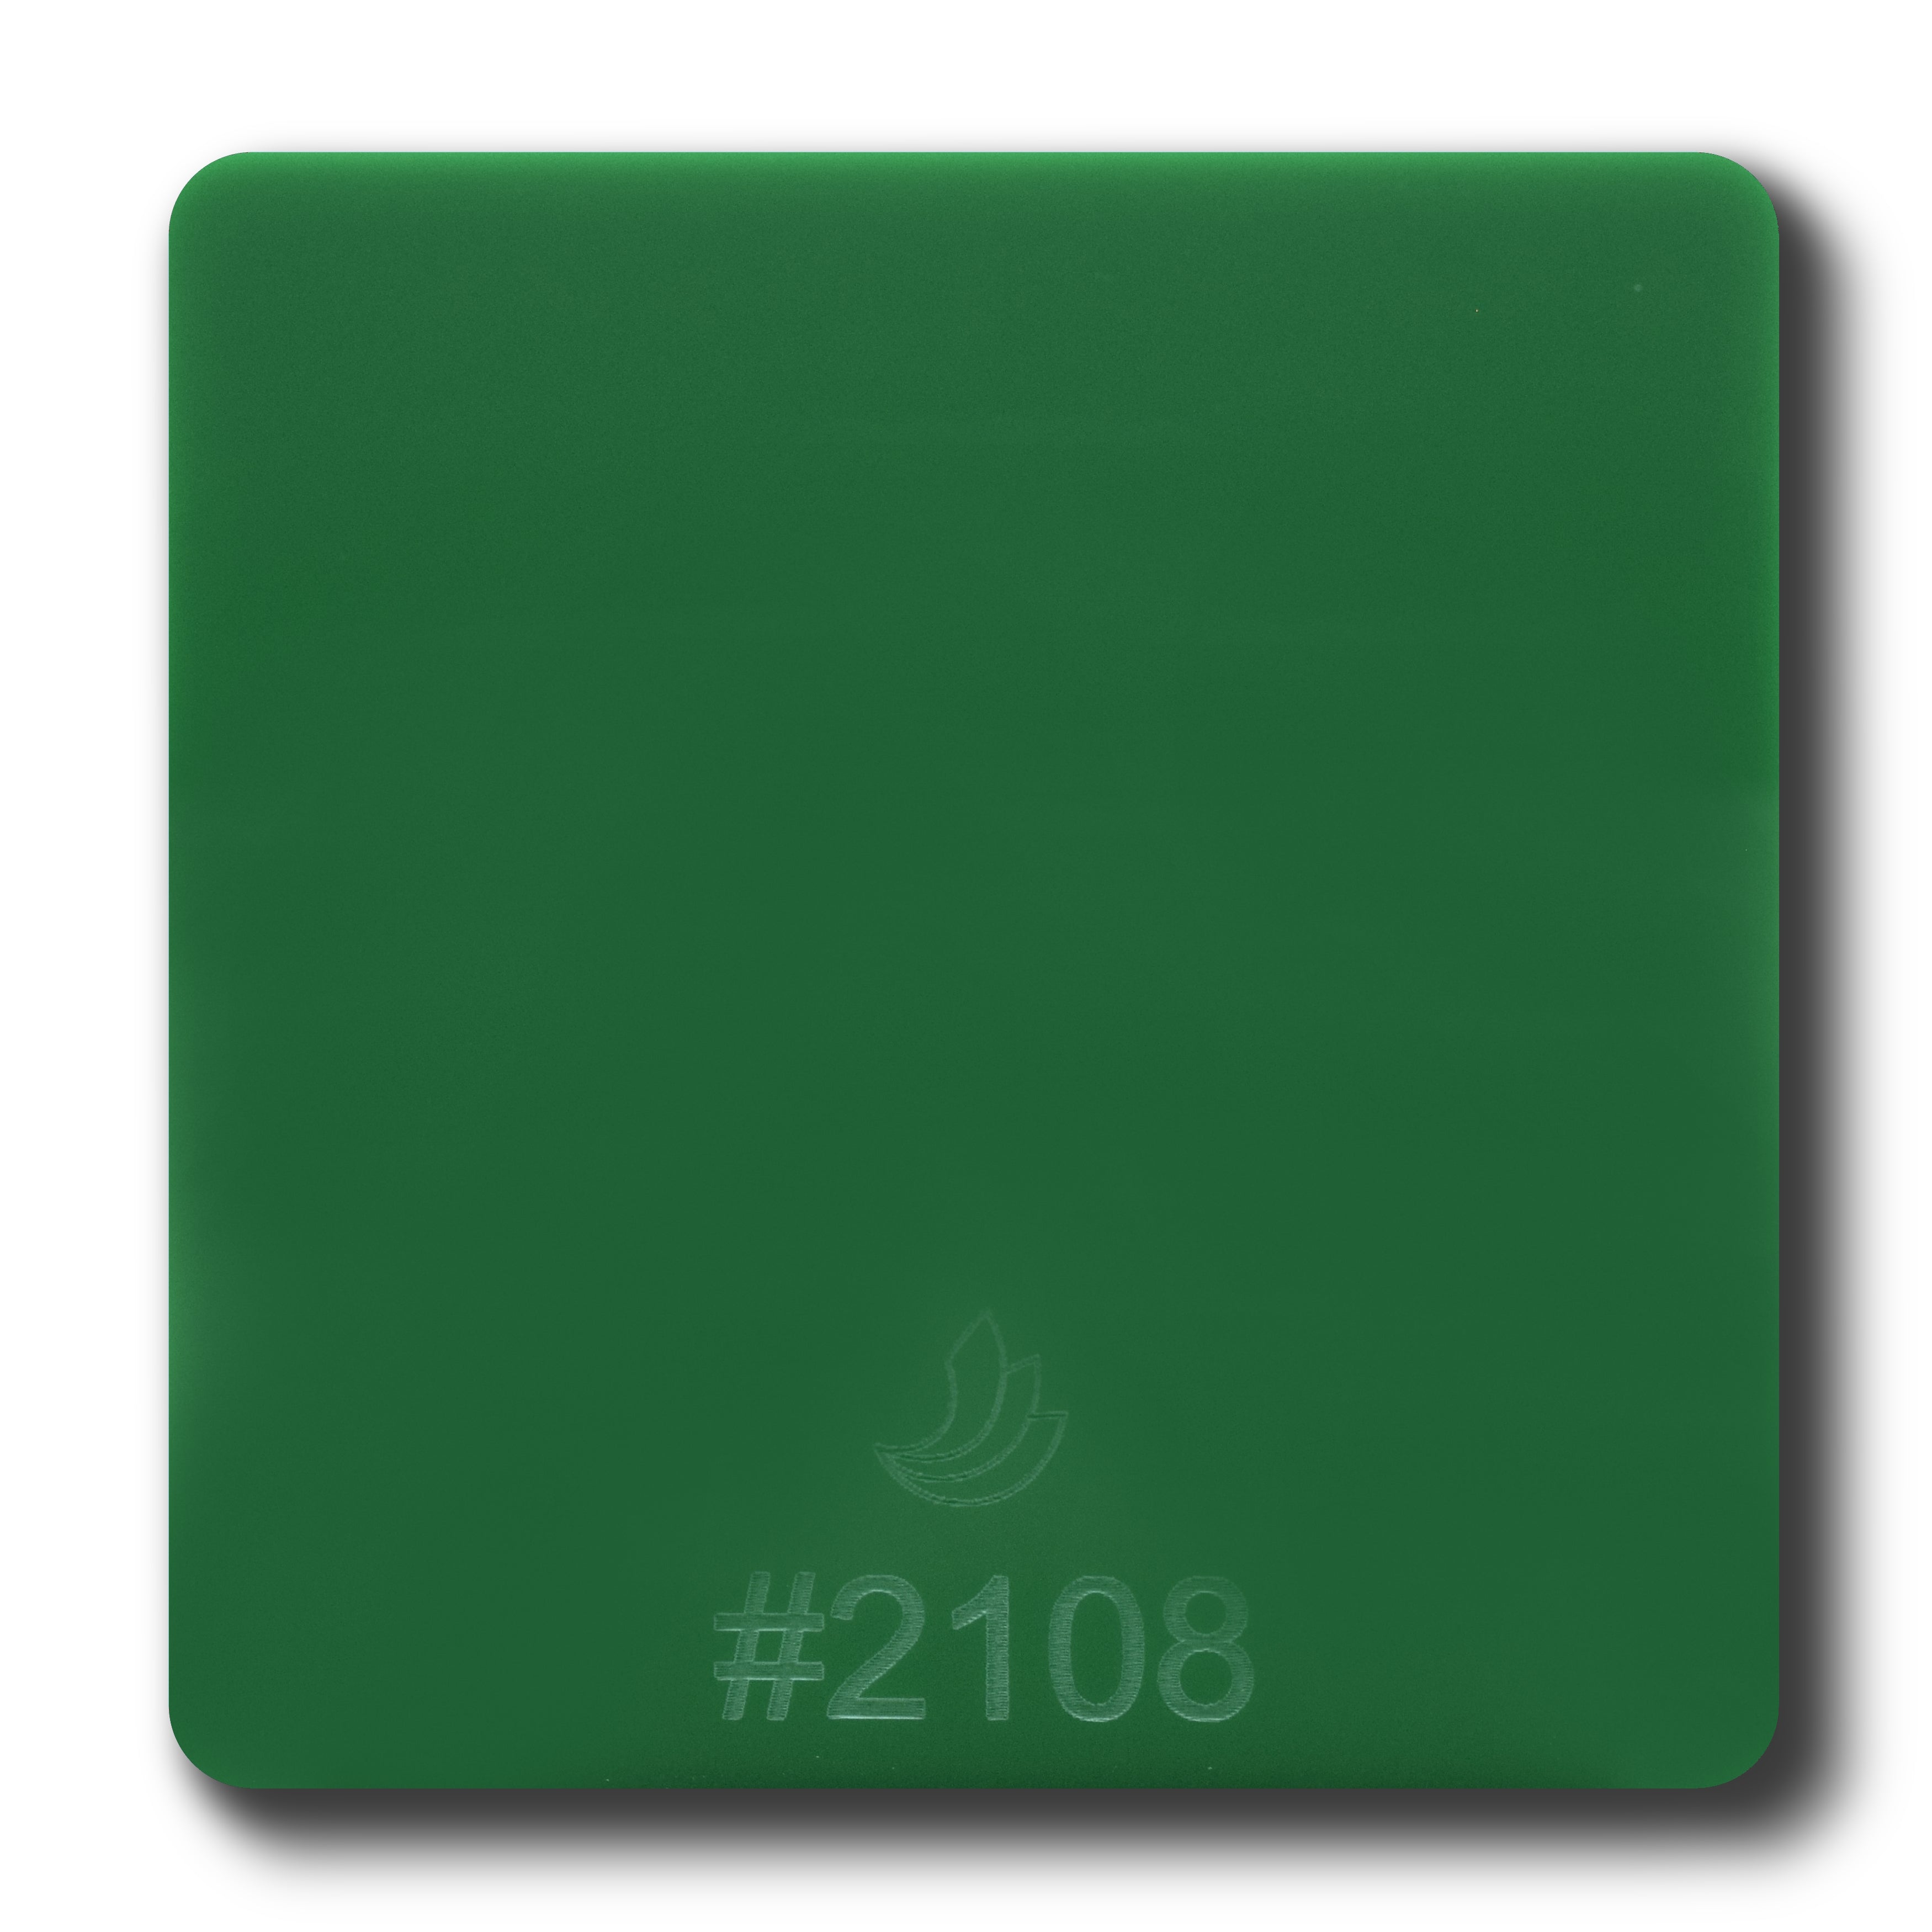 1/8" Green Opaque #2108 Acrylic Sheet